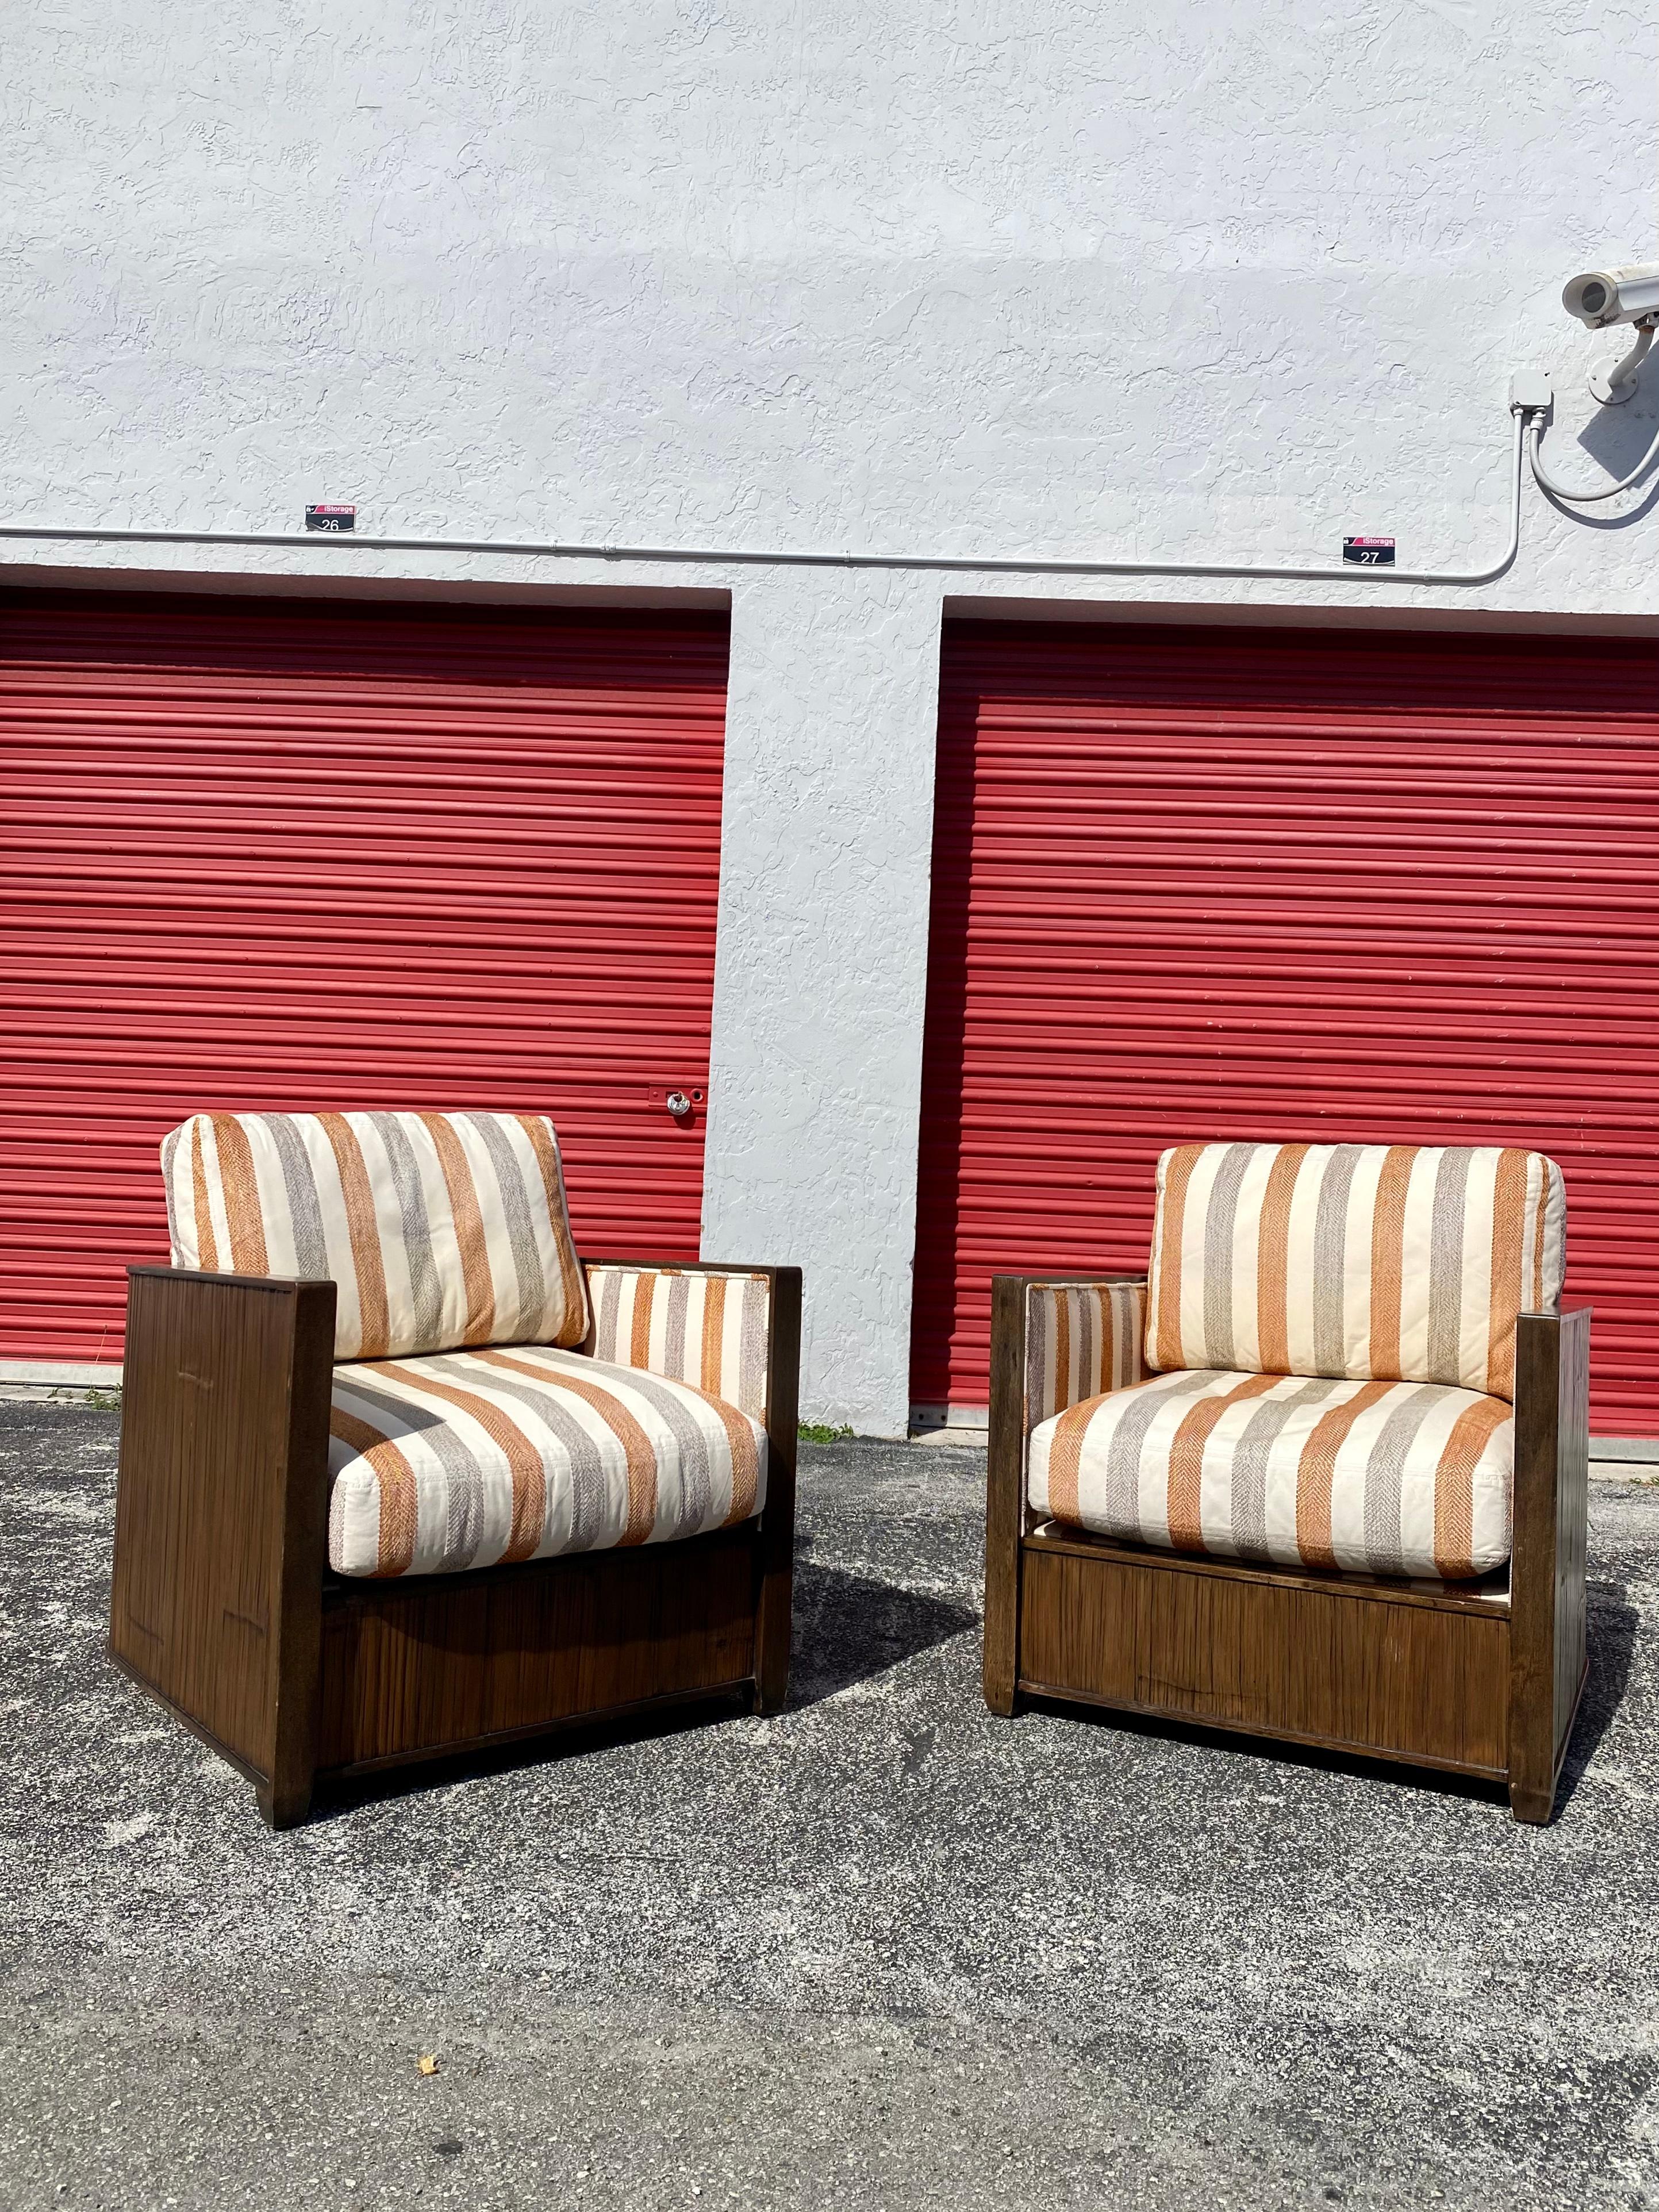 Extrêmement rare ! Dramatique paire de fauteuils club à dossier en tonneau en bois organique par McGuire. Les chaises présentent une structure en rotin et en bois en forme de tonneau. Entièrement rembourré avec des coussins épais pour un confort